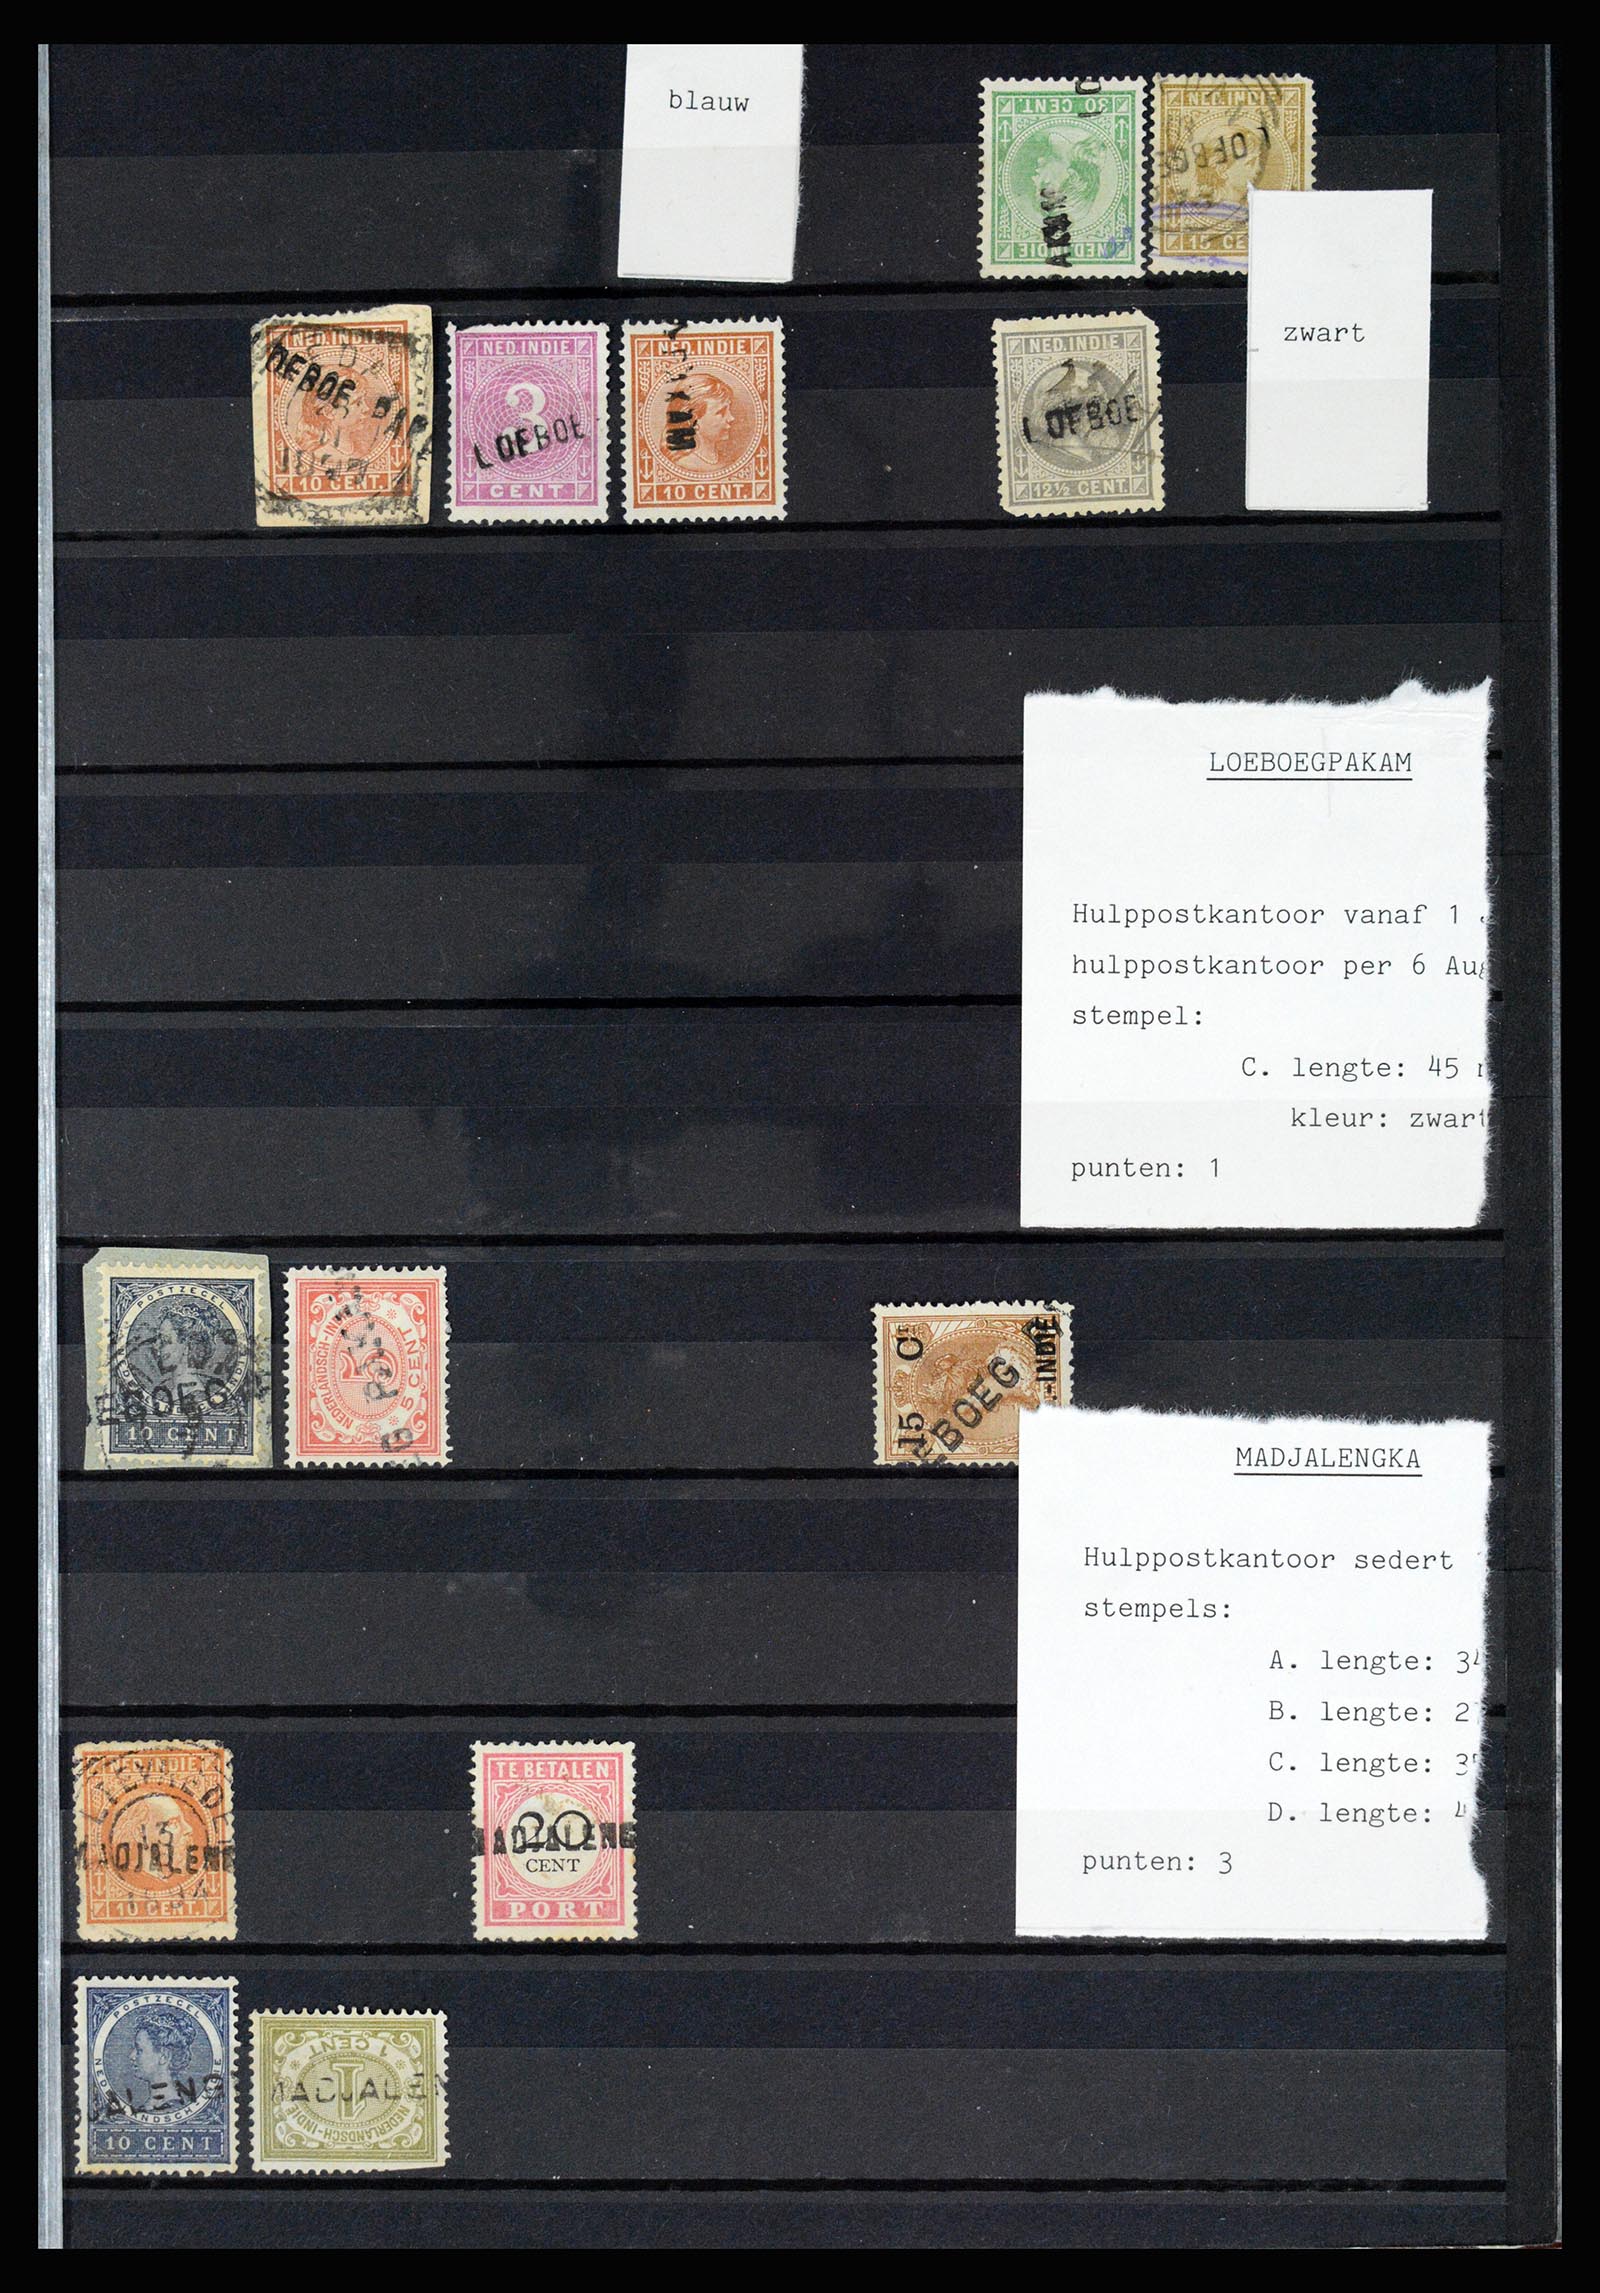 36512 041 - Stamp collection 36512 Nederlands Indië stempels 1872-1930.